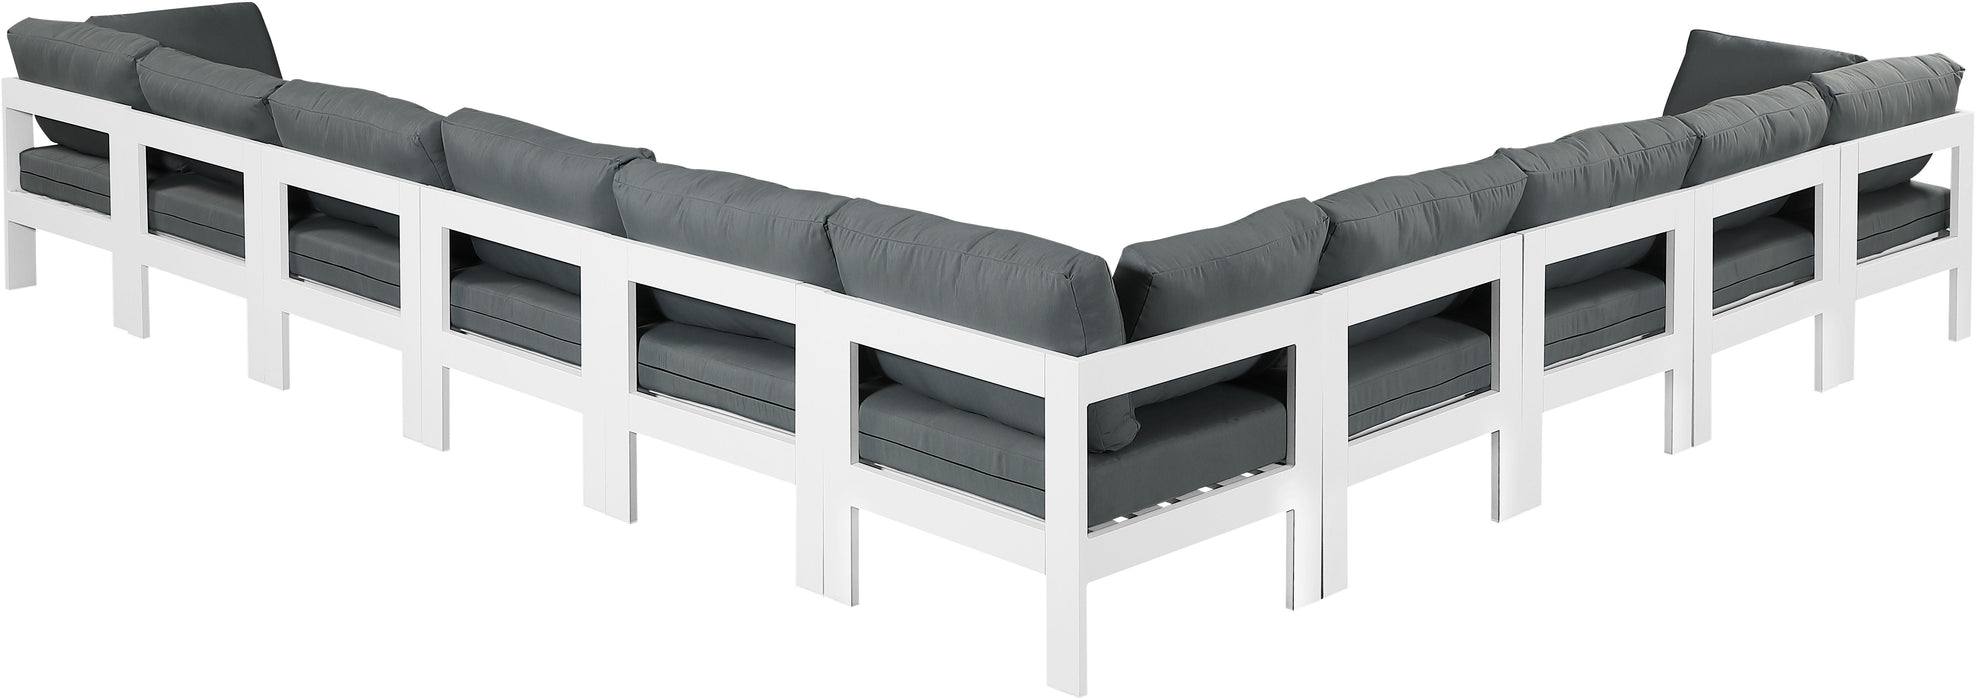 Nizuc - Outdoor Patio Modular Sectional - Grey - Modern & Contemporary